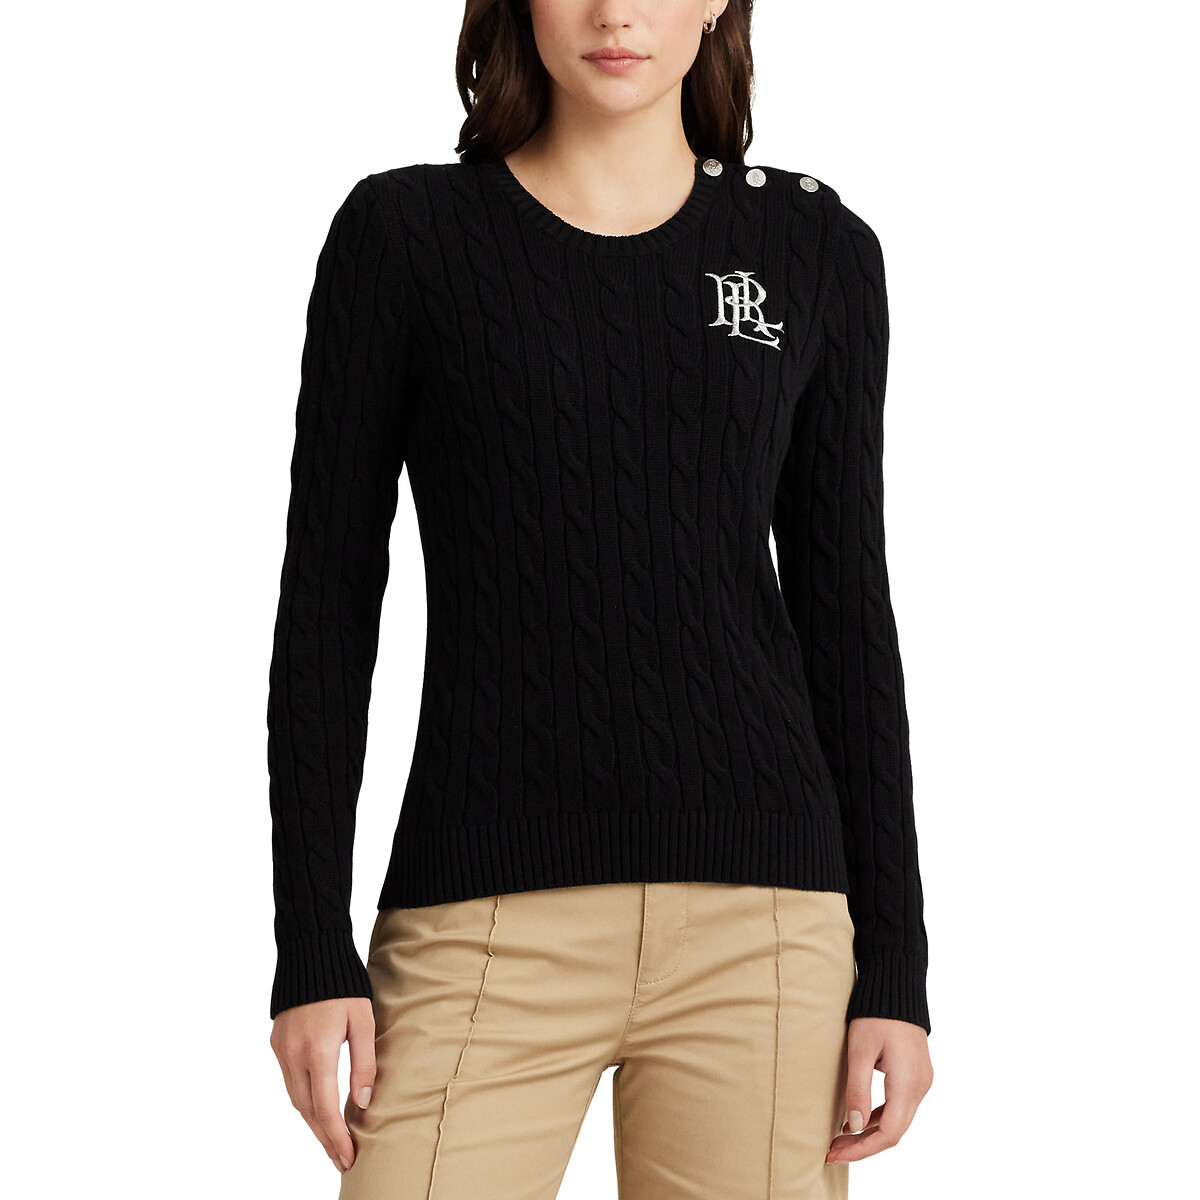 Пуловер с витым узором и круглым вырезом XS черный пуловер с высоким воротником из трикотажа с витым узором l бежевый